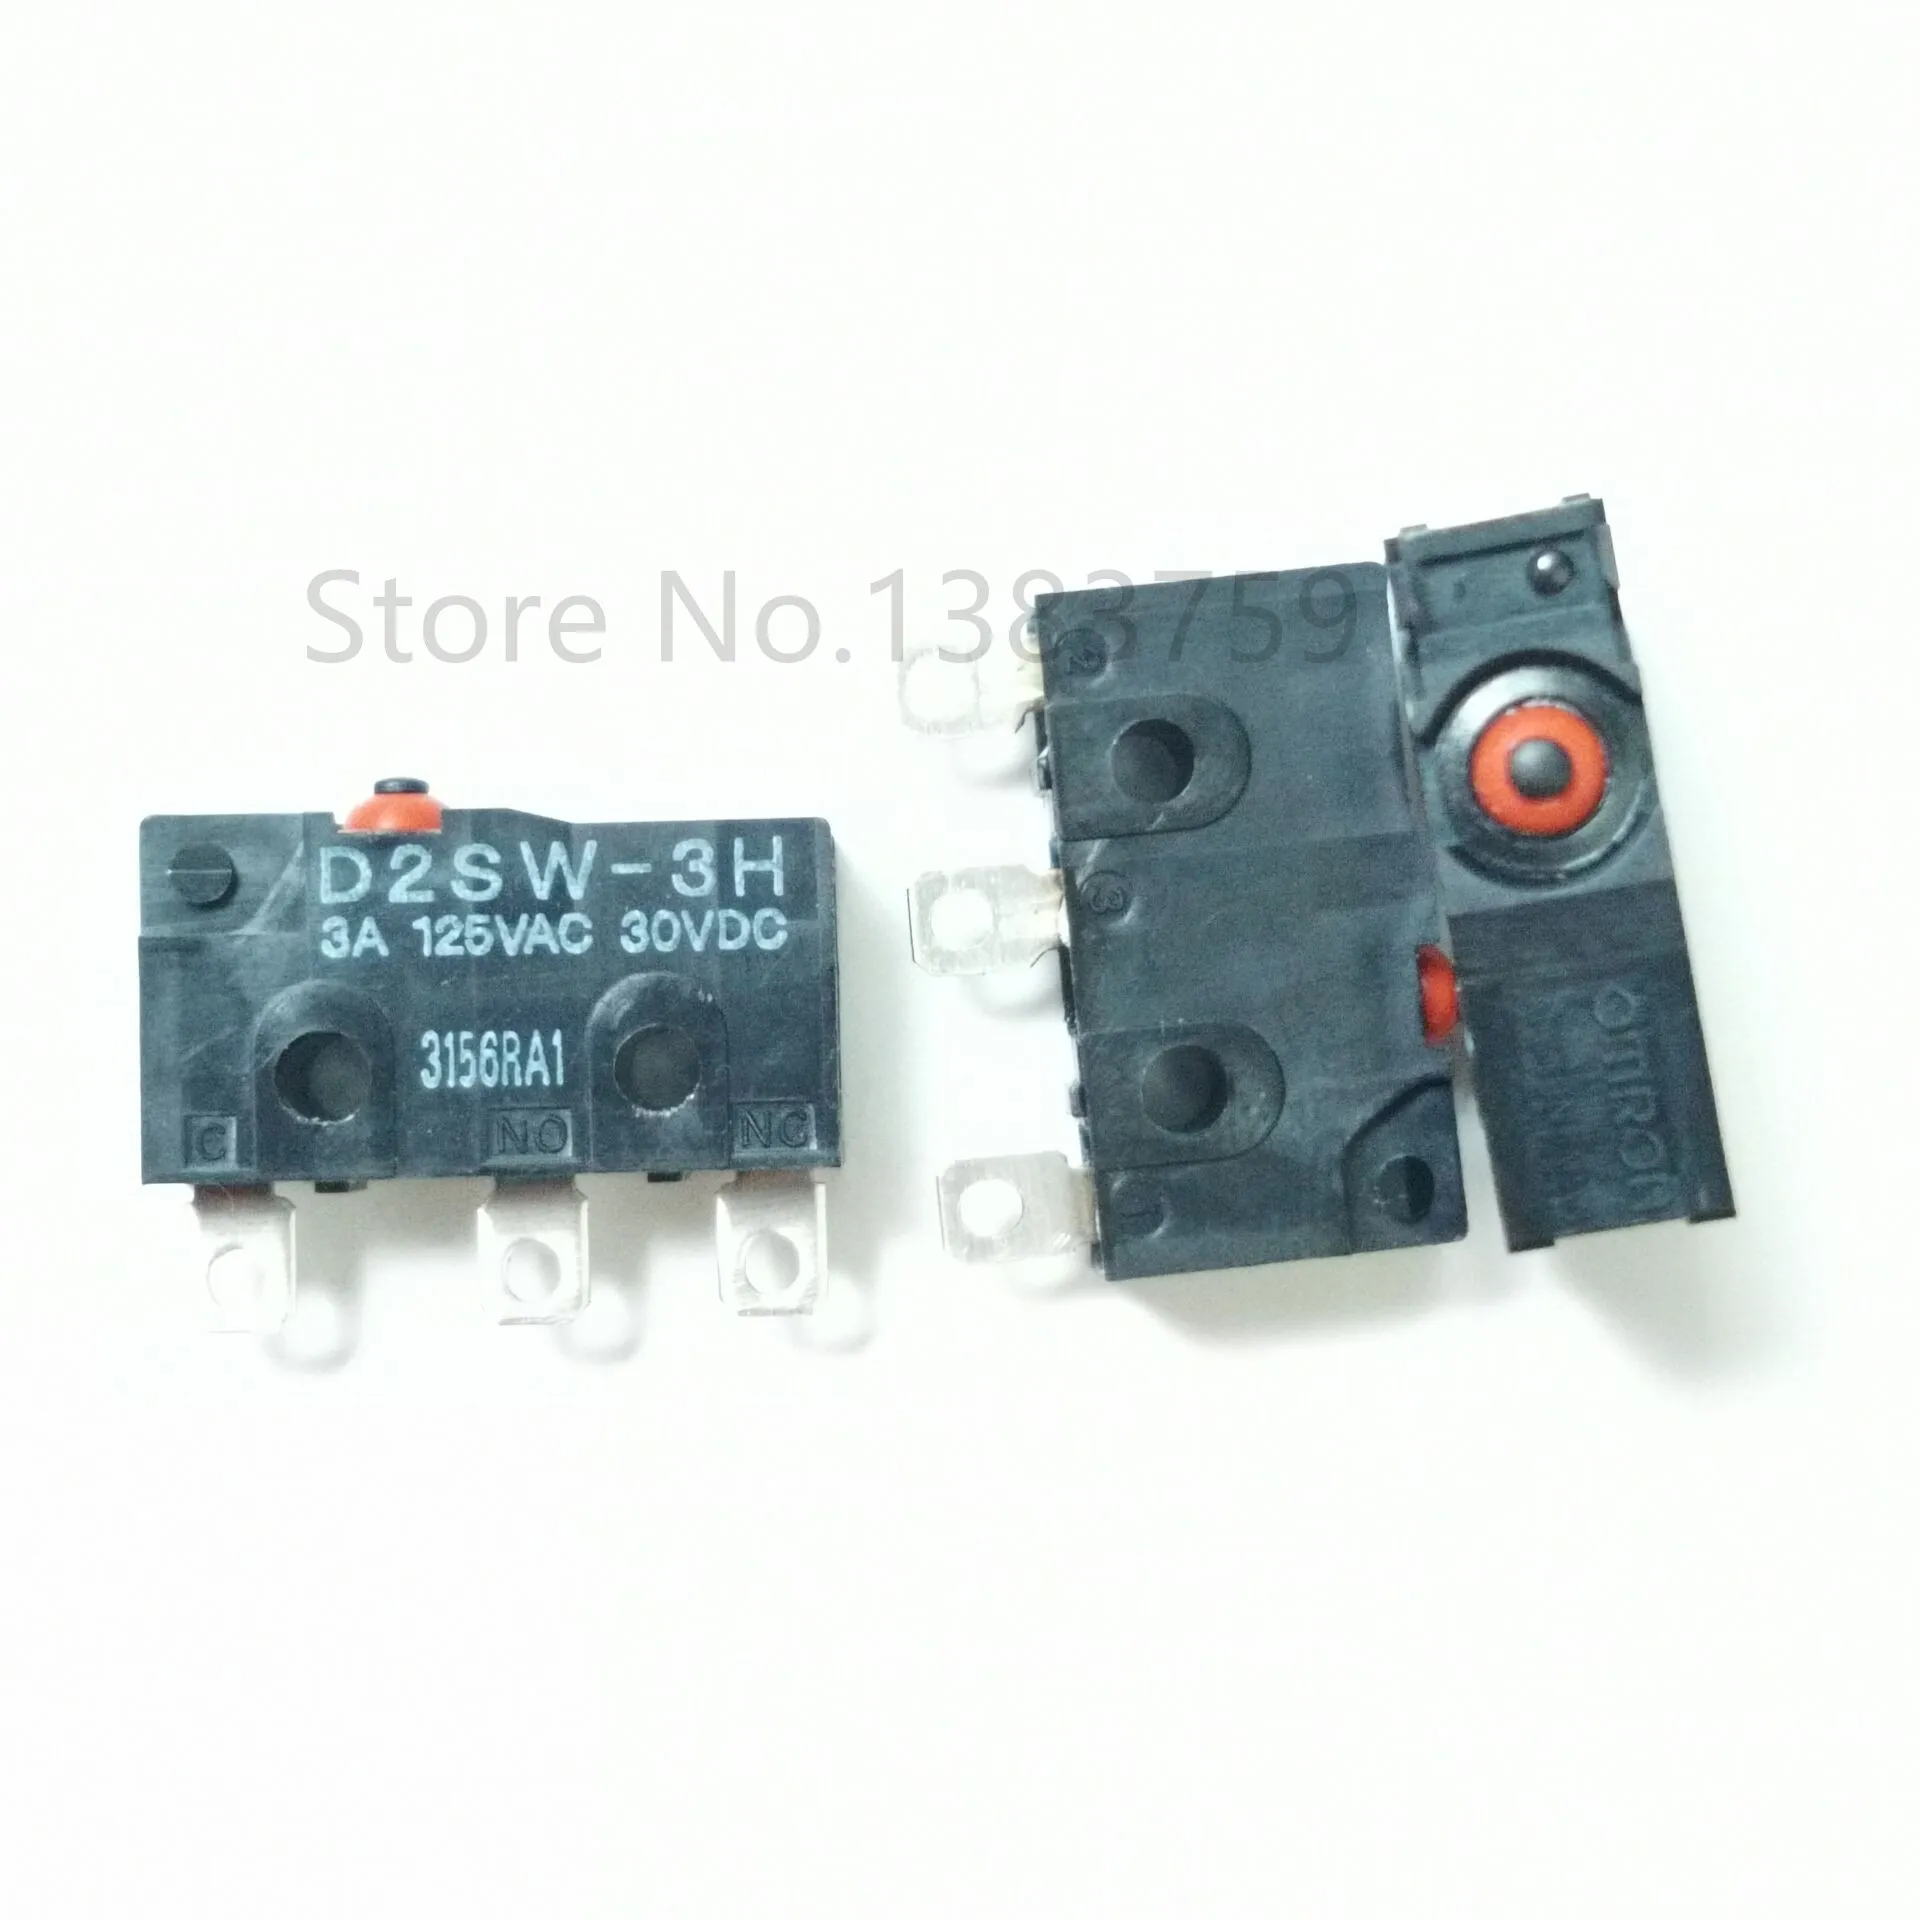 2pcs OMRON D2SW-3D3 3A 125VAC 30VDC 3pins Reset Micro Switch Japan original